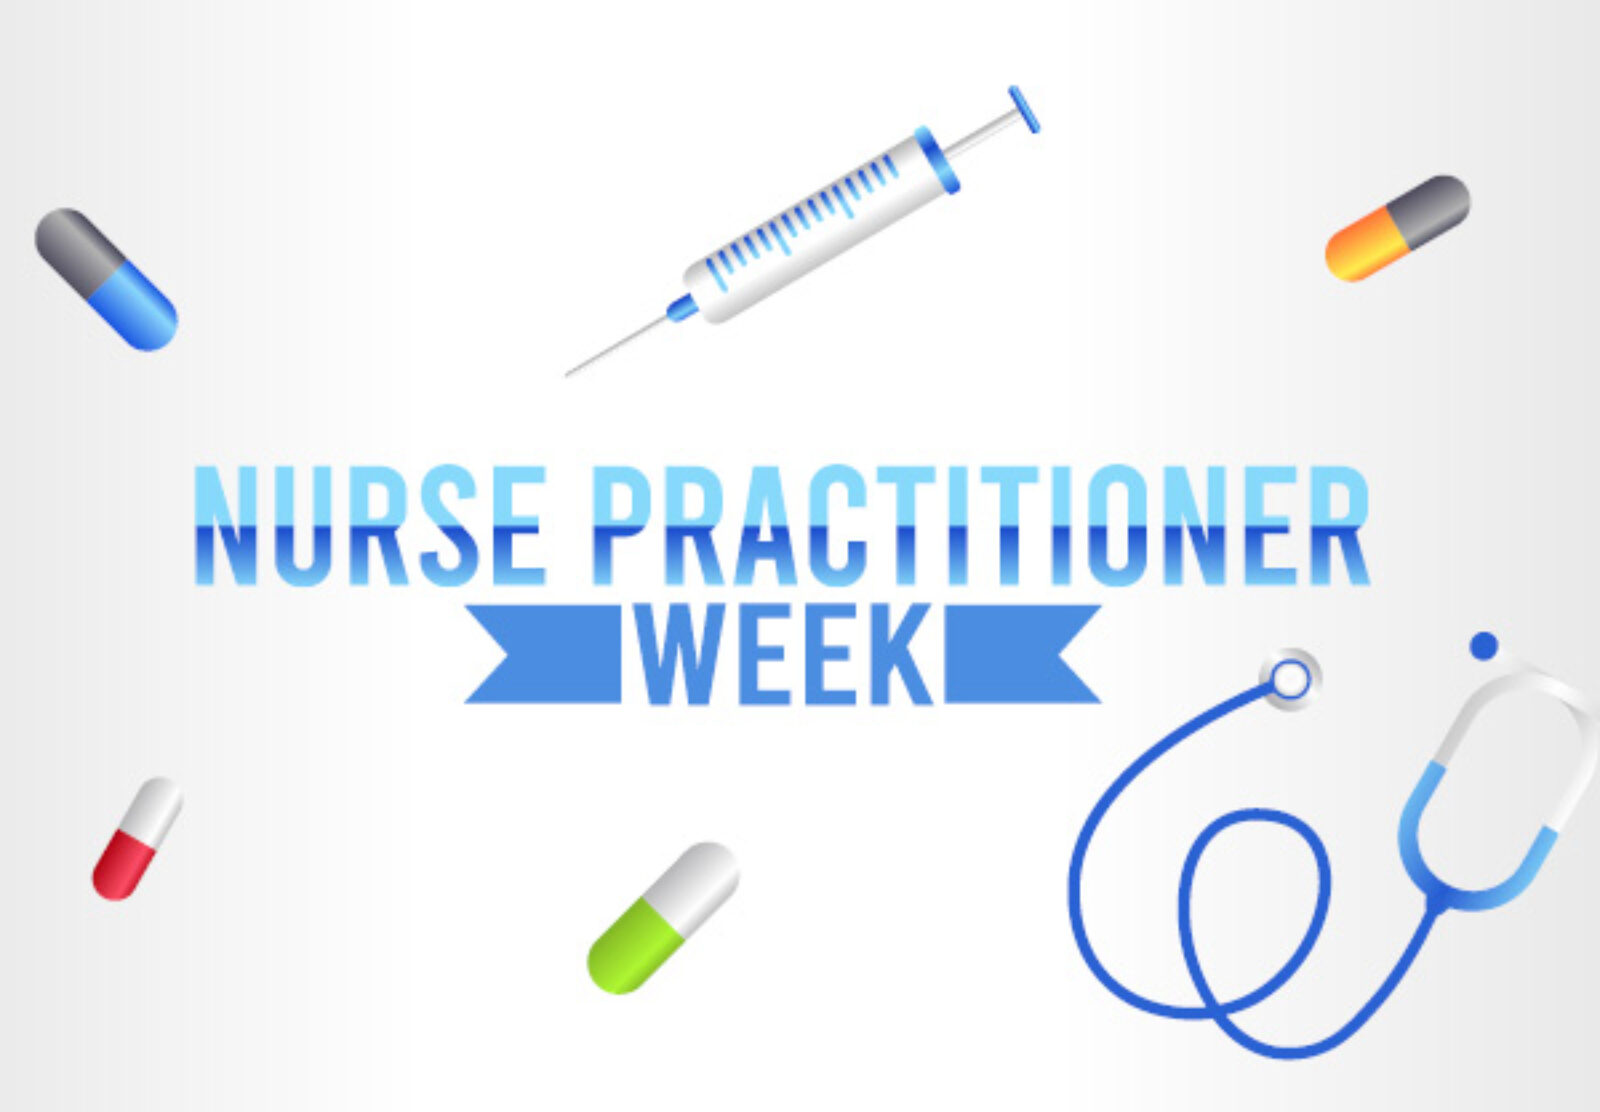 Happy Nurse Practitioner Week!